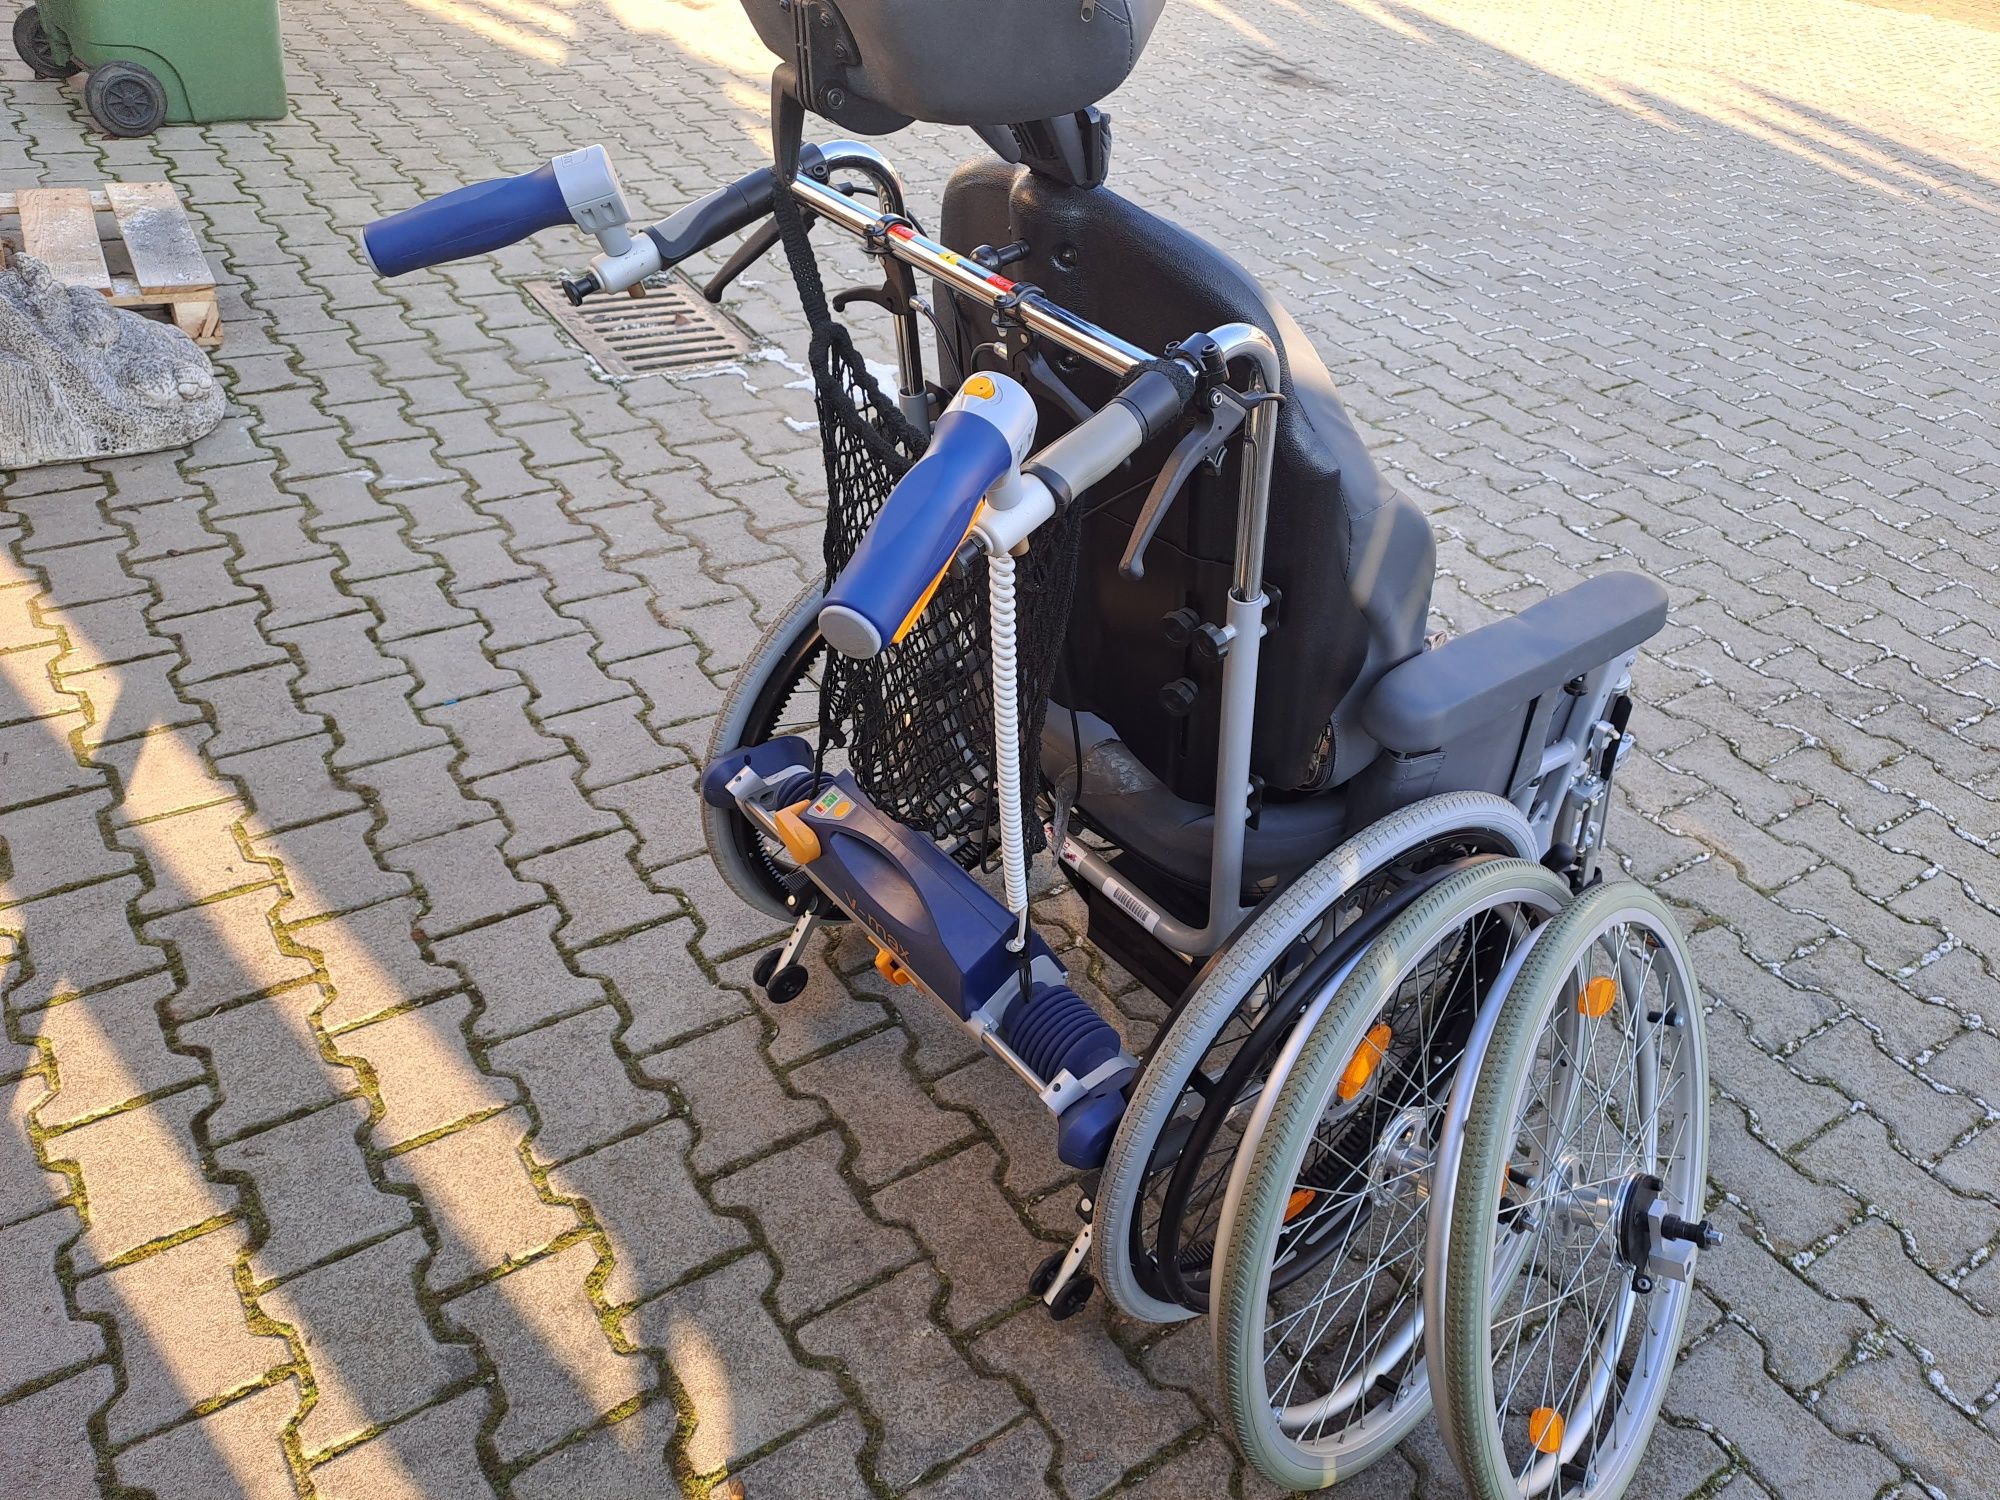 Wózek inwalidzki elektryczny V-MAX